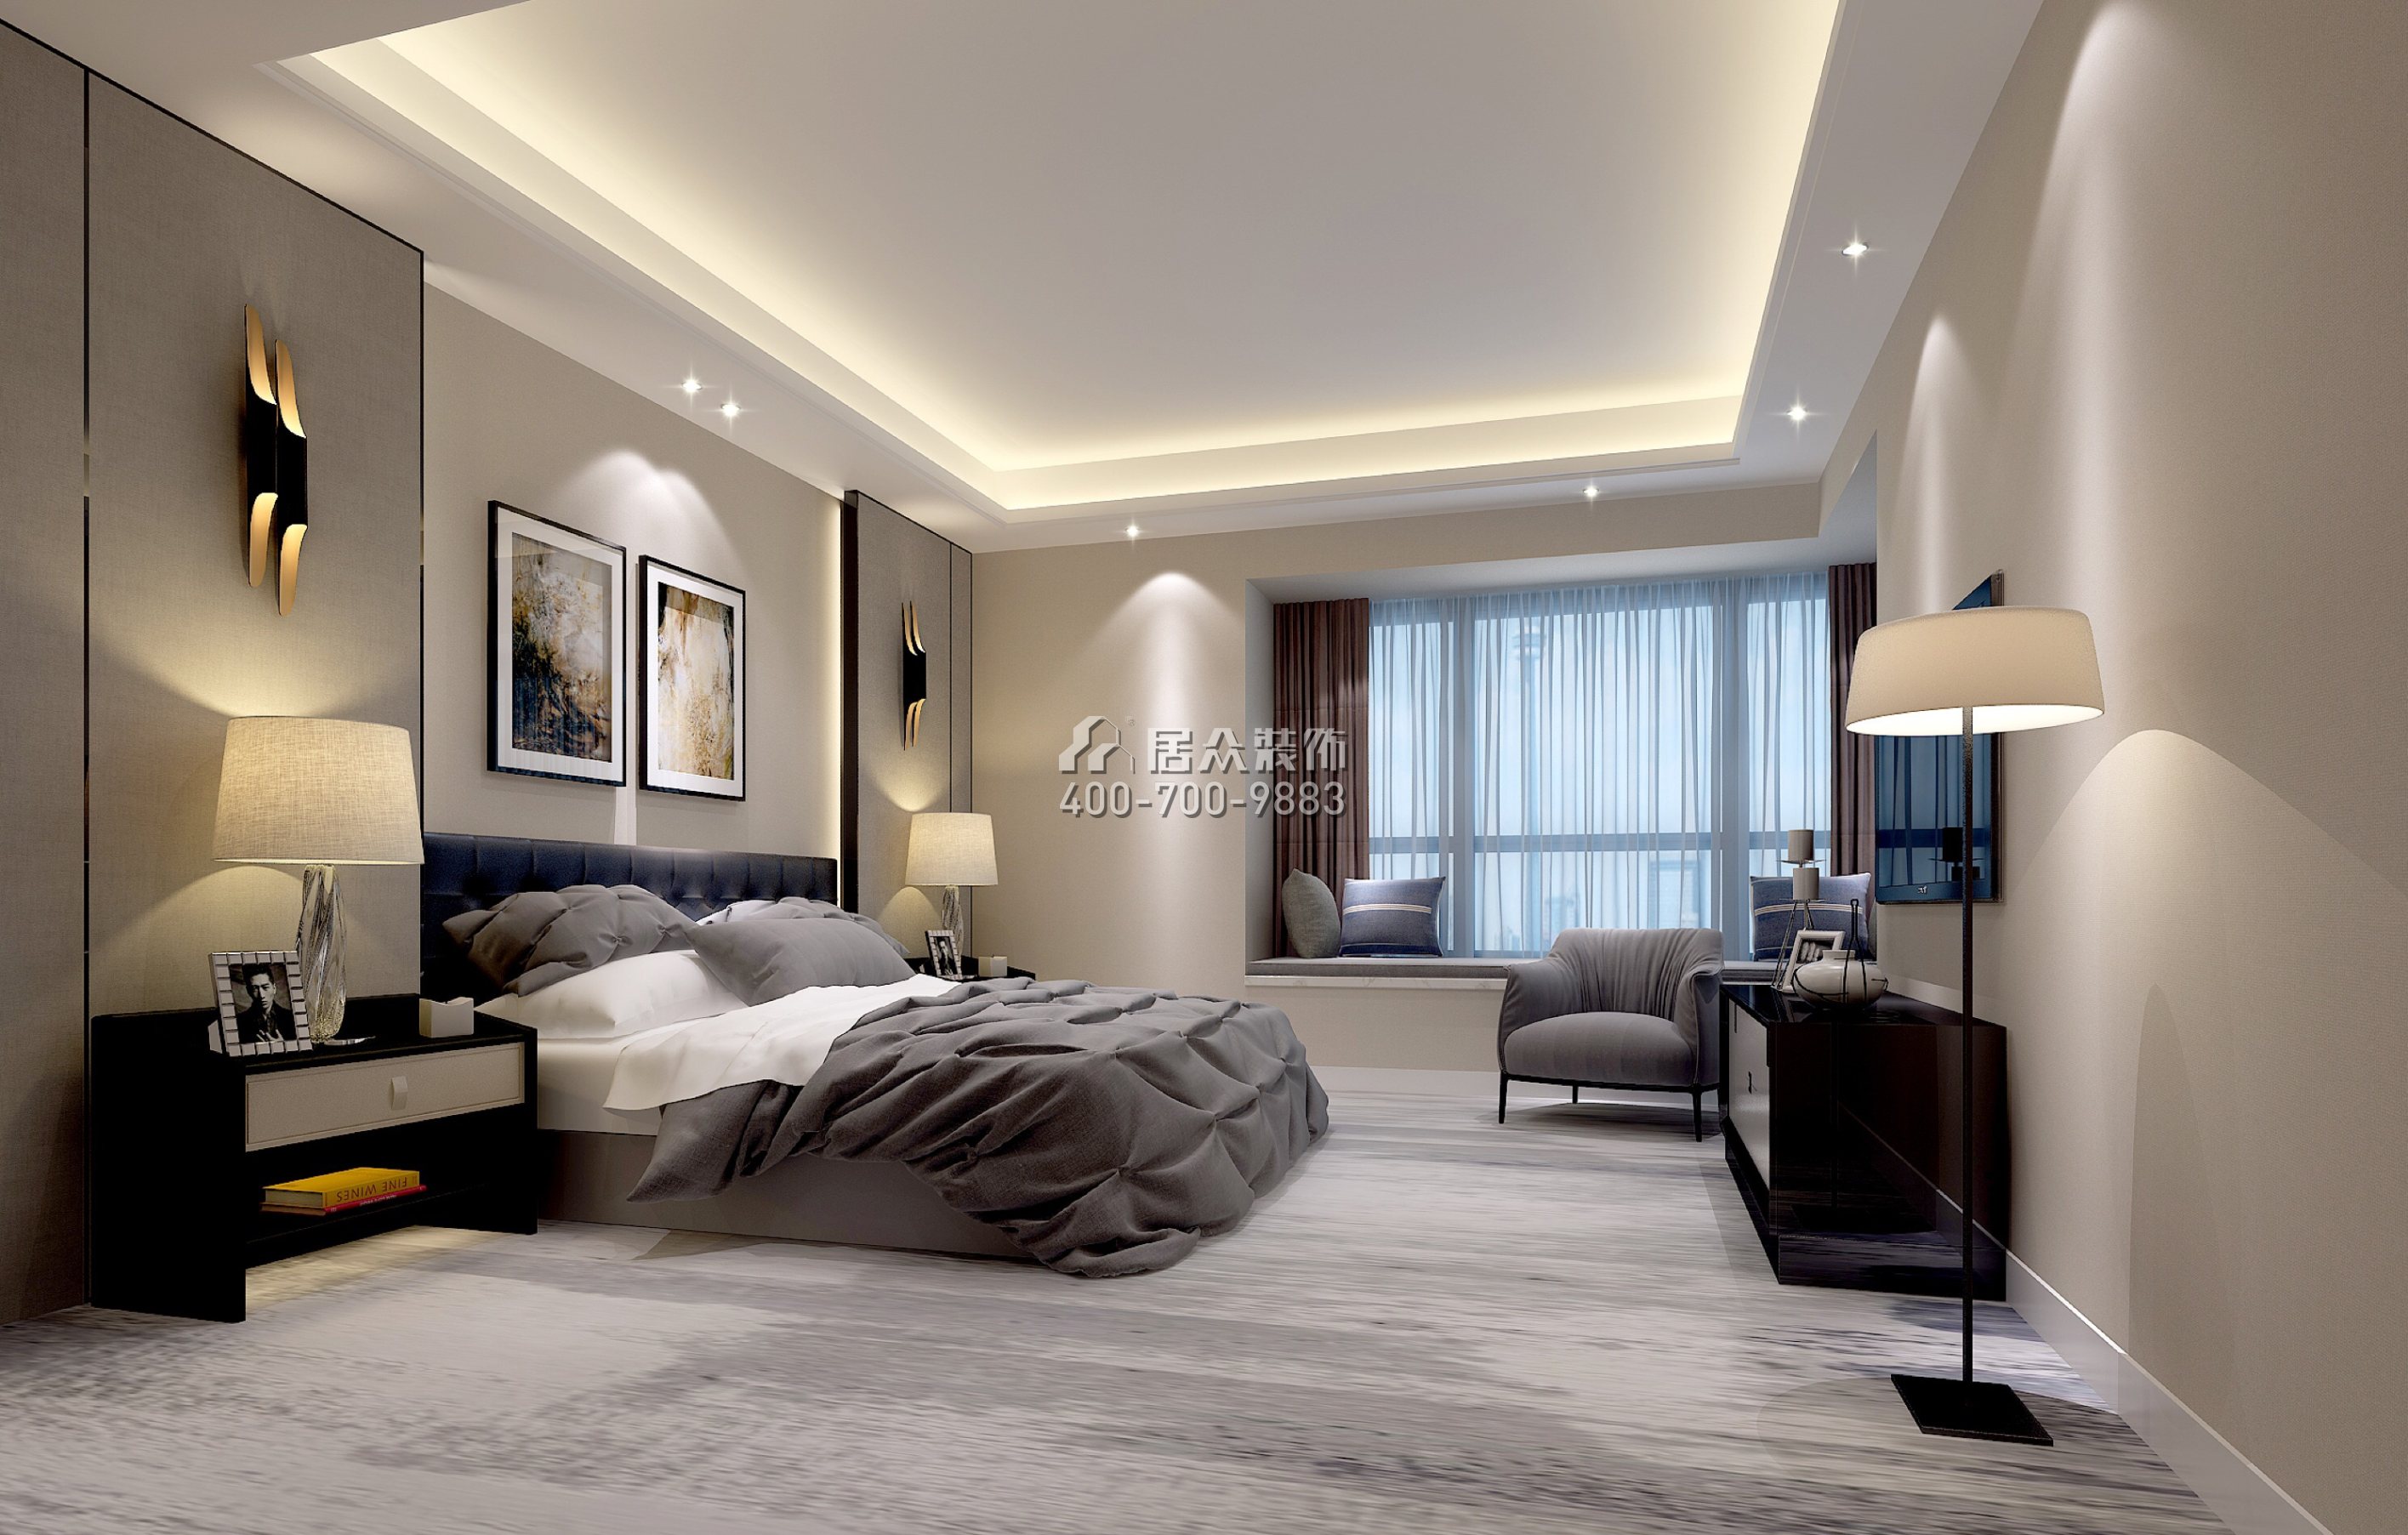 天誉190平方米现代简约风格平层户型卧室装修效果图